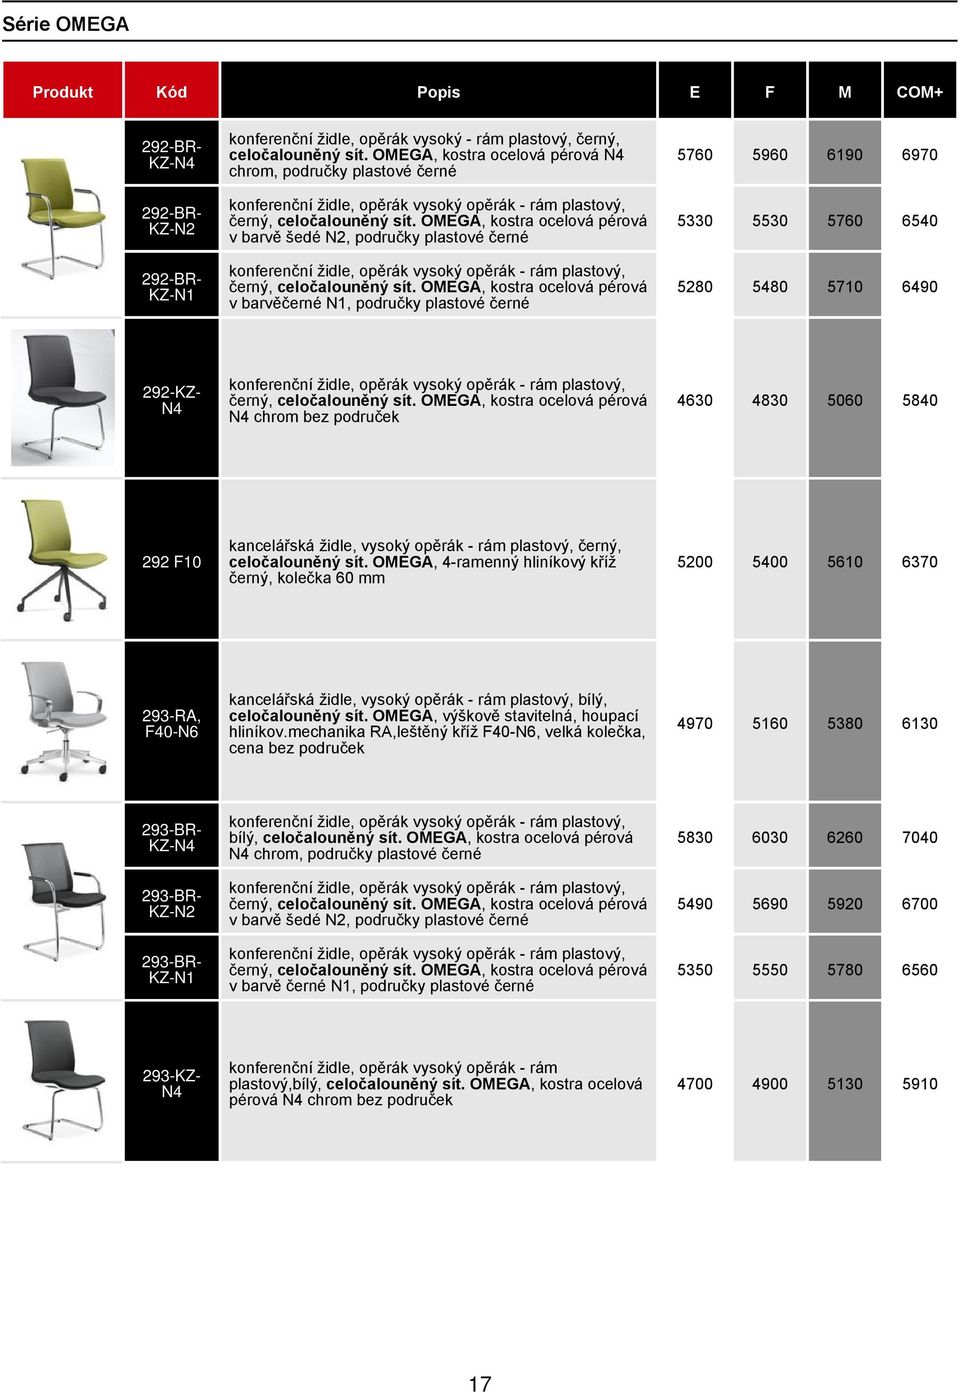 OMEGA, kostra ocelová pérová v barvě šedé N2, područky plastové černé konferenční židle, opěrák vysoký opěrák - rám plastový, černý, celočalouněný sít.